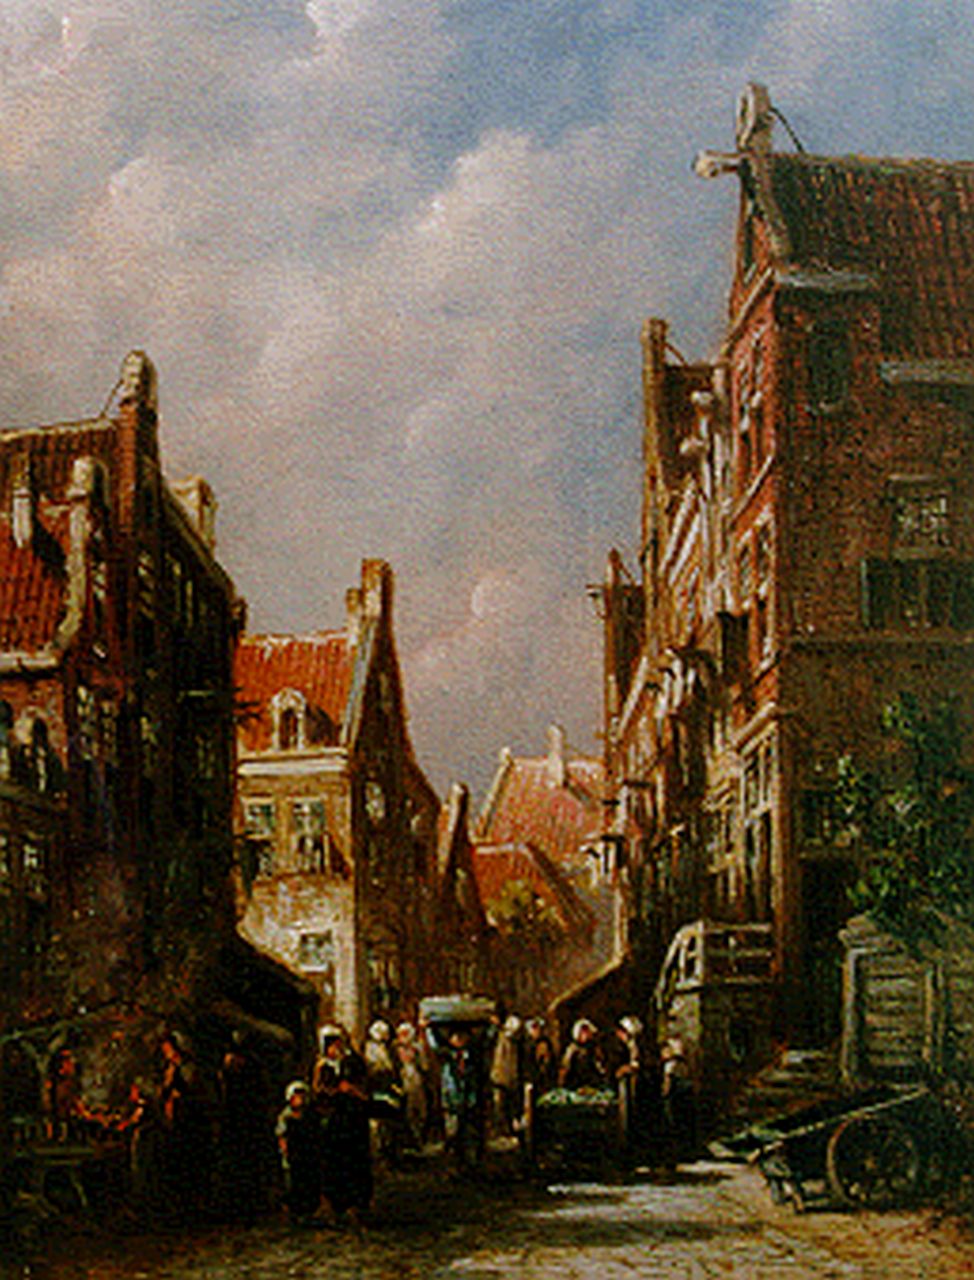 Vertin P.G.  | Petrus Gerardus Vertin, Markt in zomers straatje, olieverf op paneel 19,4 x 14,9 cm, gesigneerd linksonder